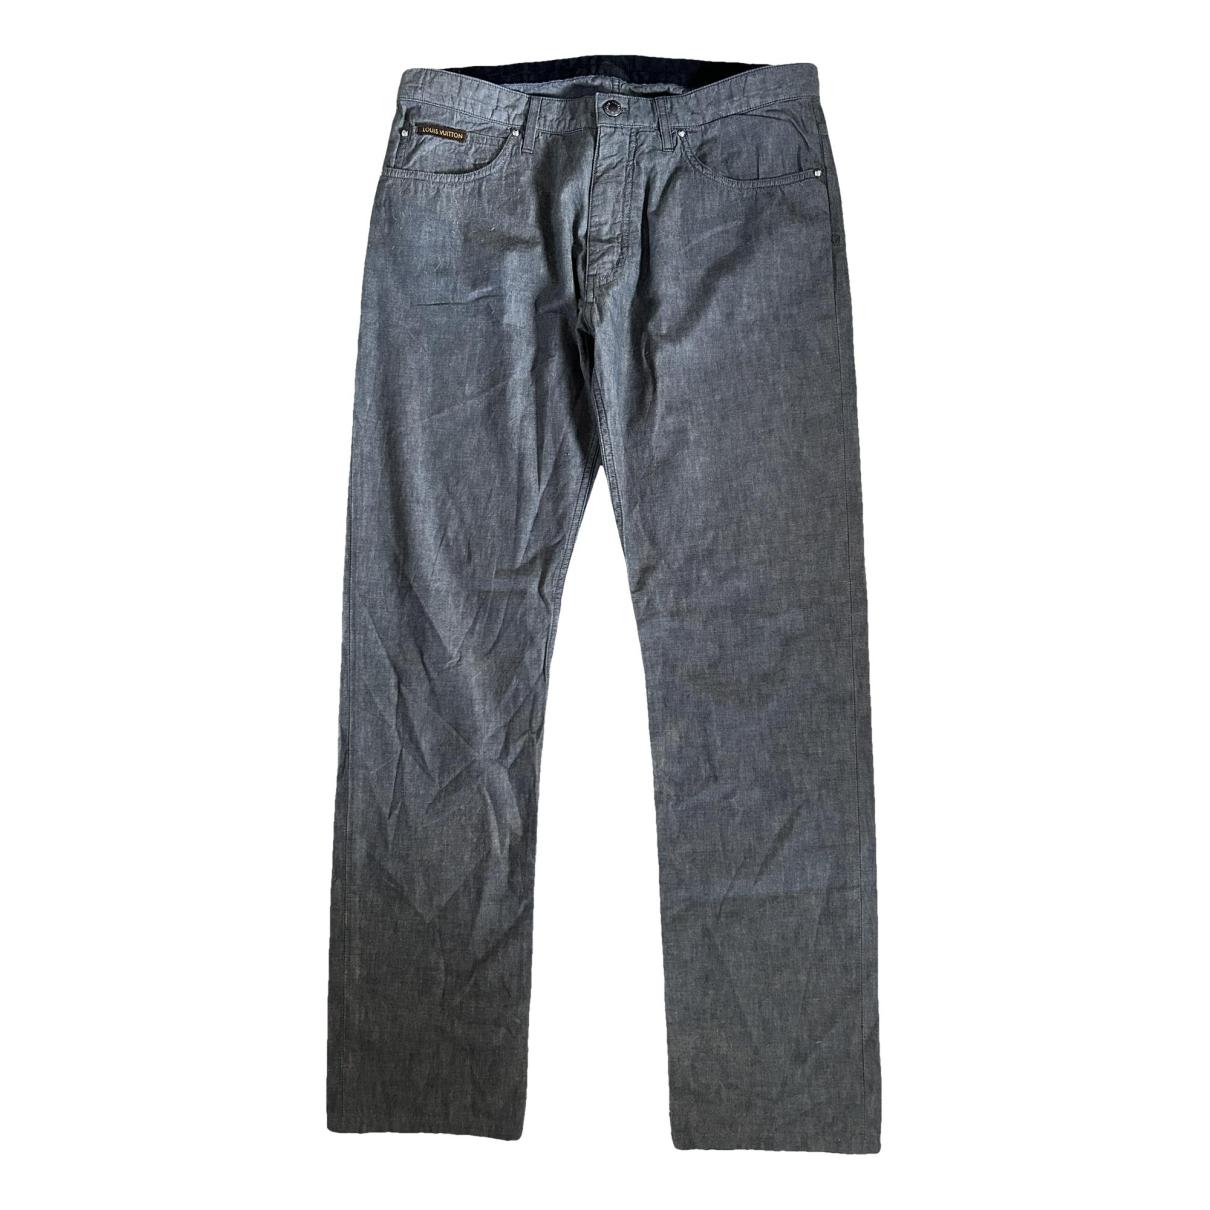 LOUIS VUITTON pantalones de los hombres en algodón gris …